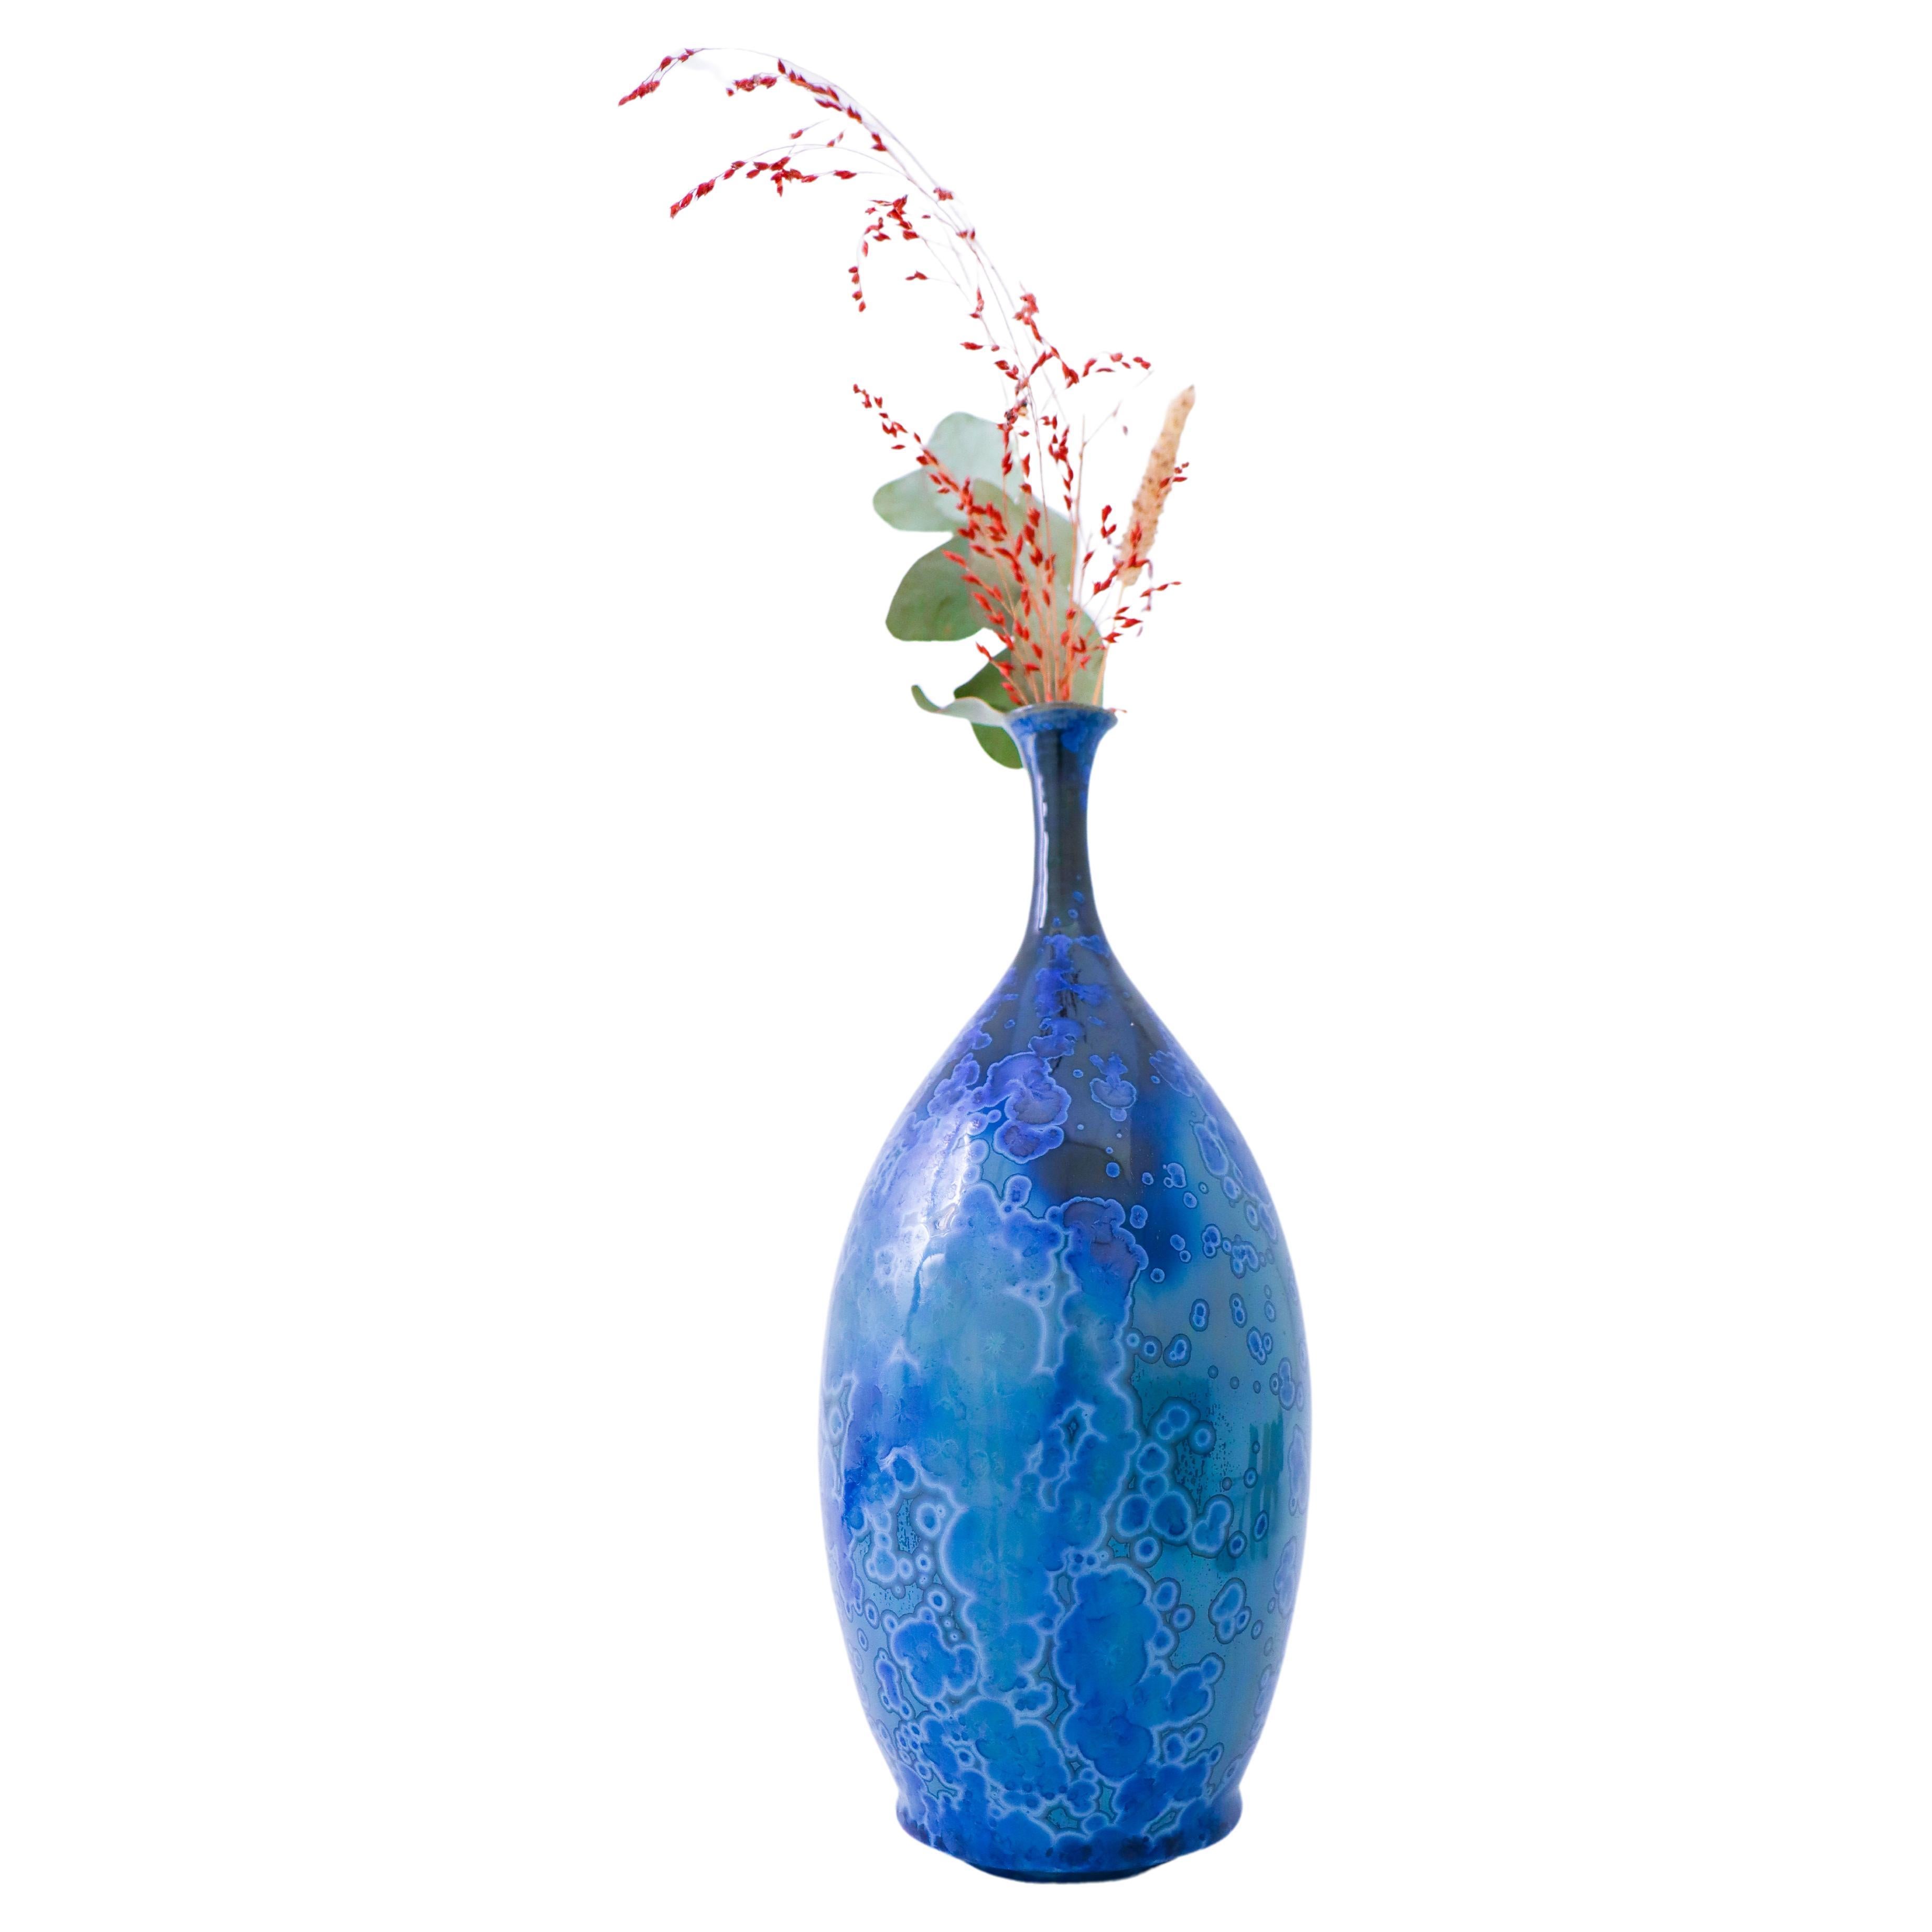 Isak Isaksson Blaue Keramikvase mit kristalliner Glasur Zeitgenössischer Künstler